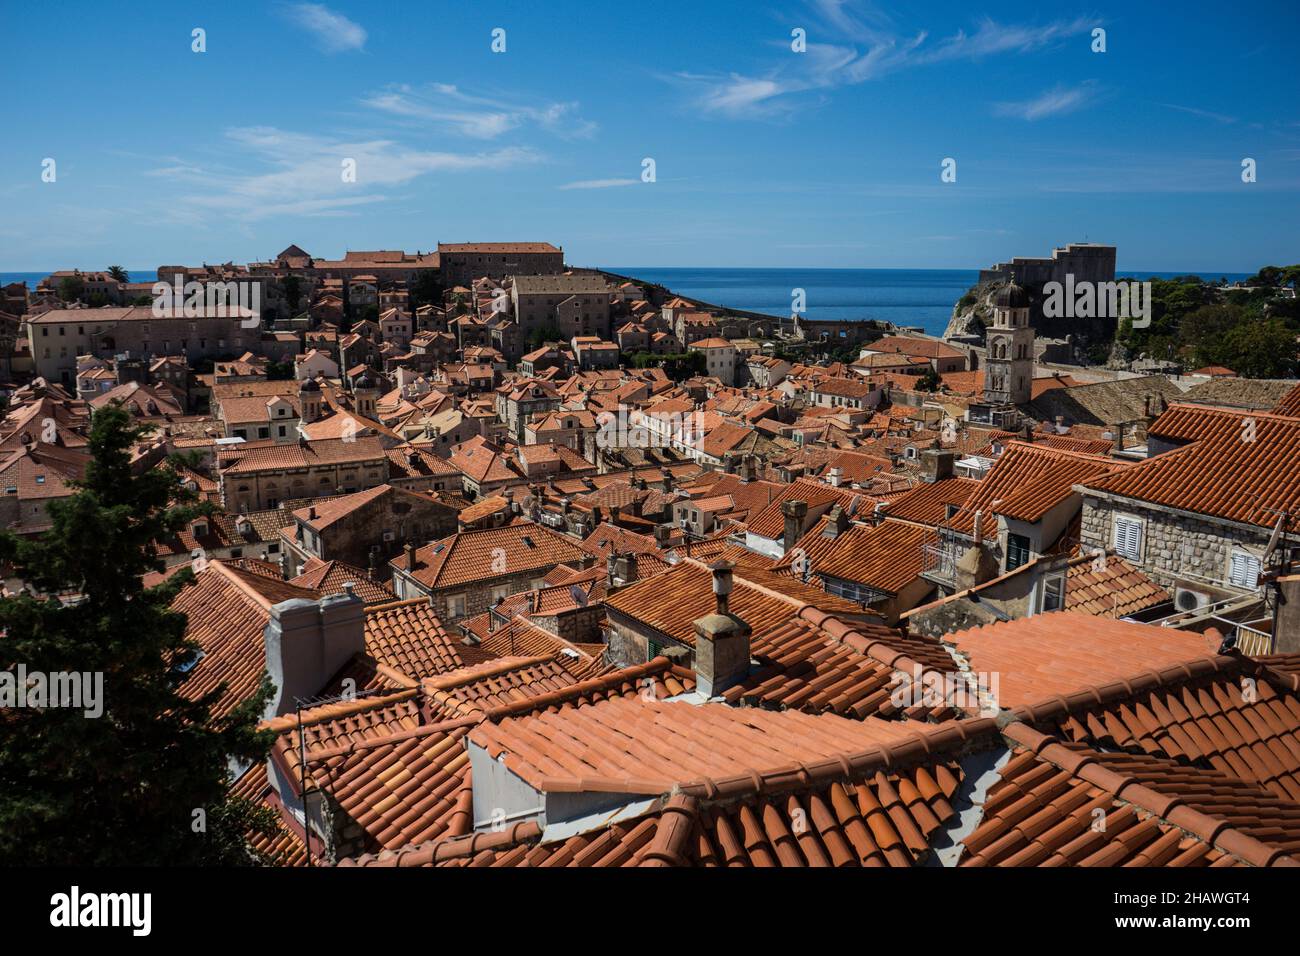 Vue sur la mer avec vue sur les toits en terre cuite de la vieille ville de Dubrovnik, Croatie Banque D'Images